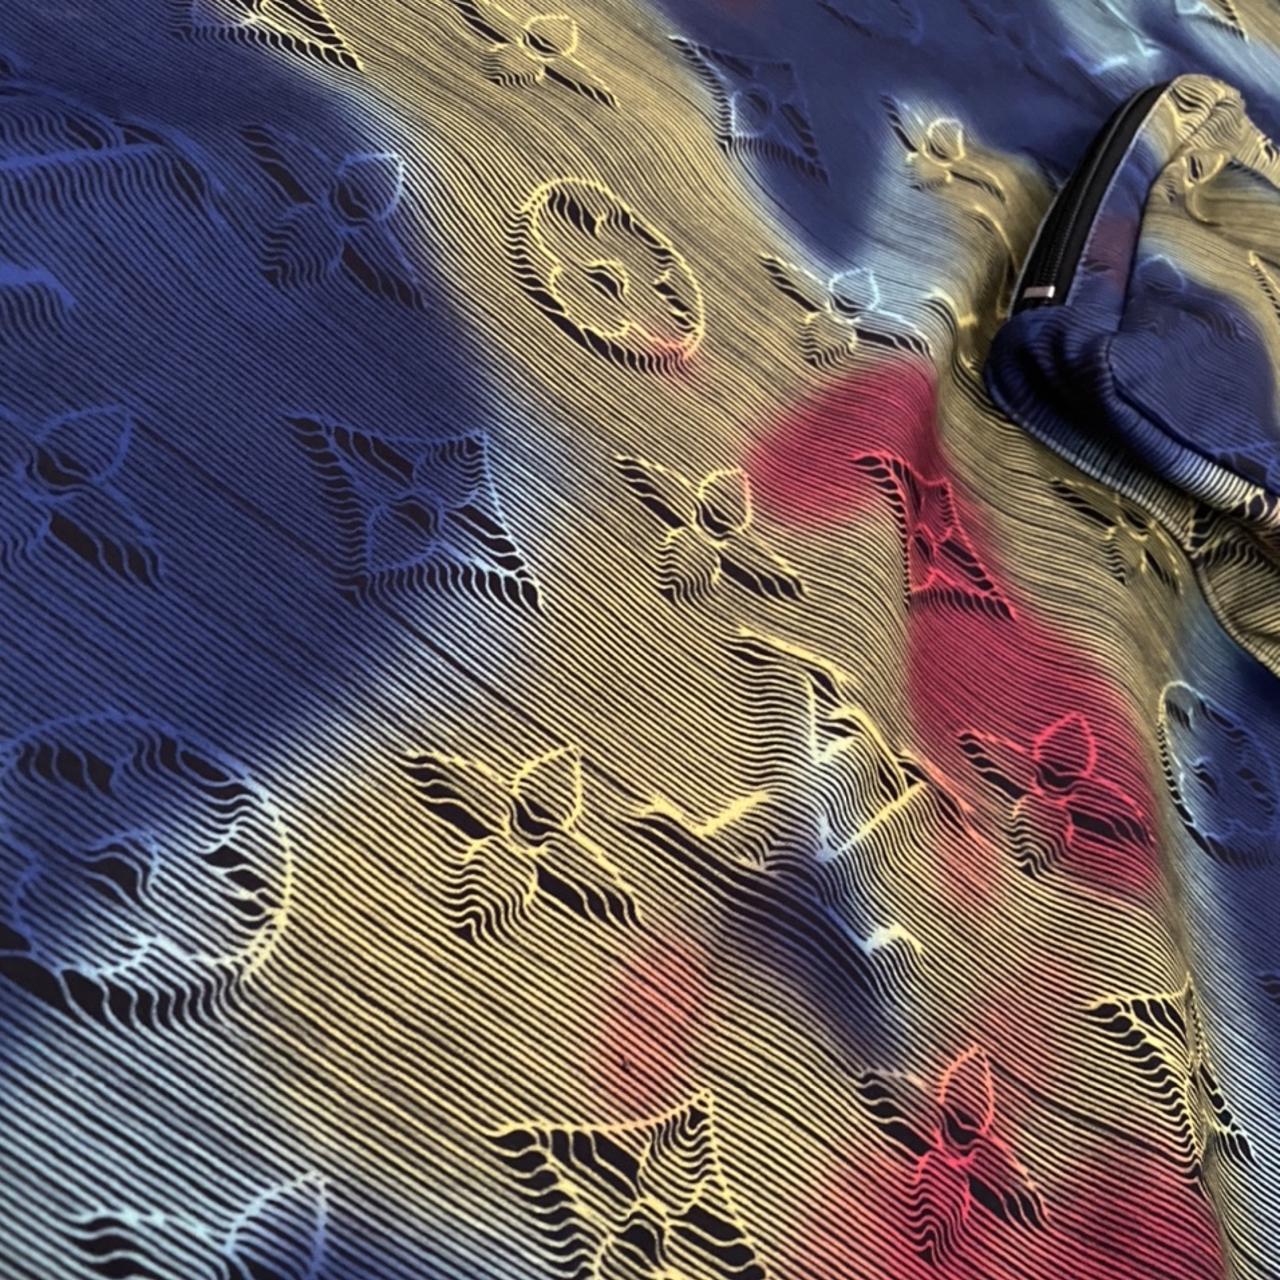 Meek Mill Styling In A Louis Vuitton Shirt, Belt & Sunglasses